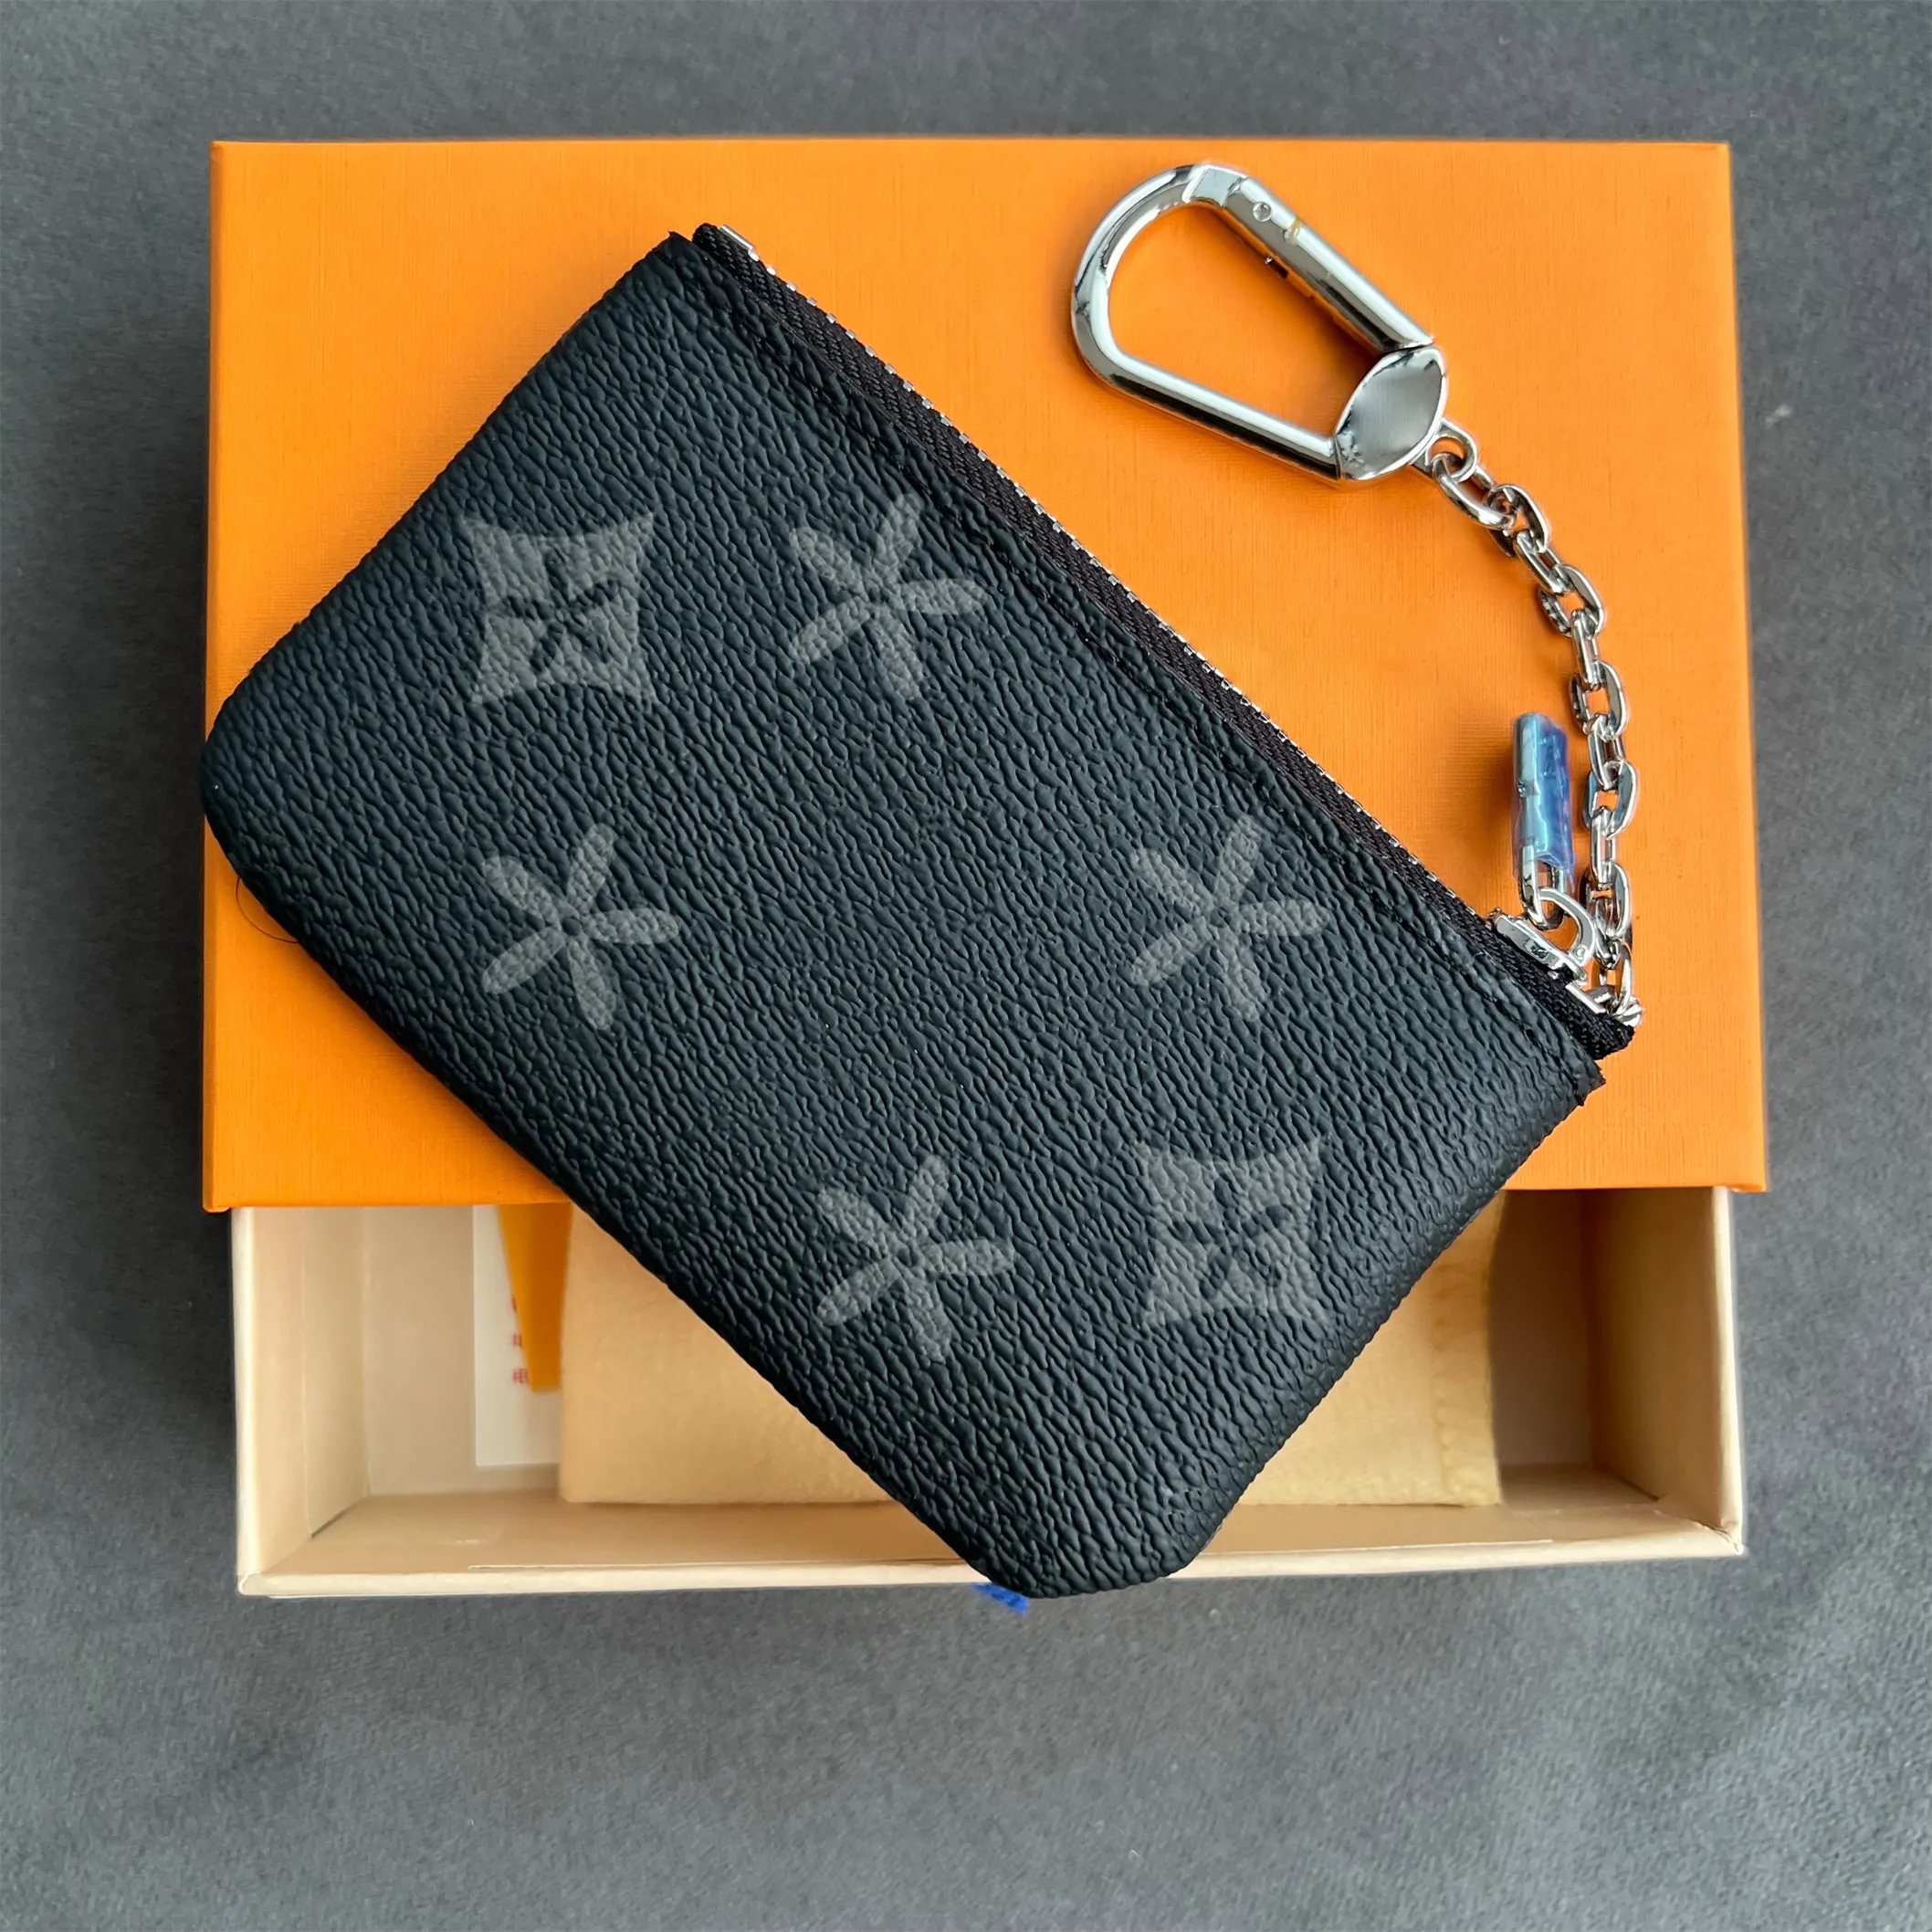 Porta-cartões de grife de luxo louiseity M62650 carteira zippy chaveiro com caixa porta-moedas bolsas femininas masculinas bolsa solvente armadilha viutonity mini carteiras pulseiras